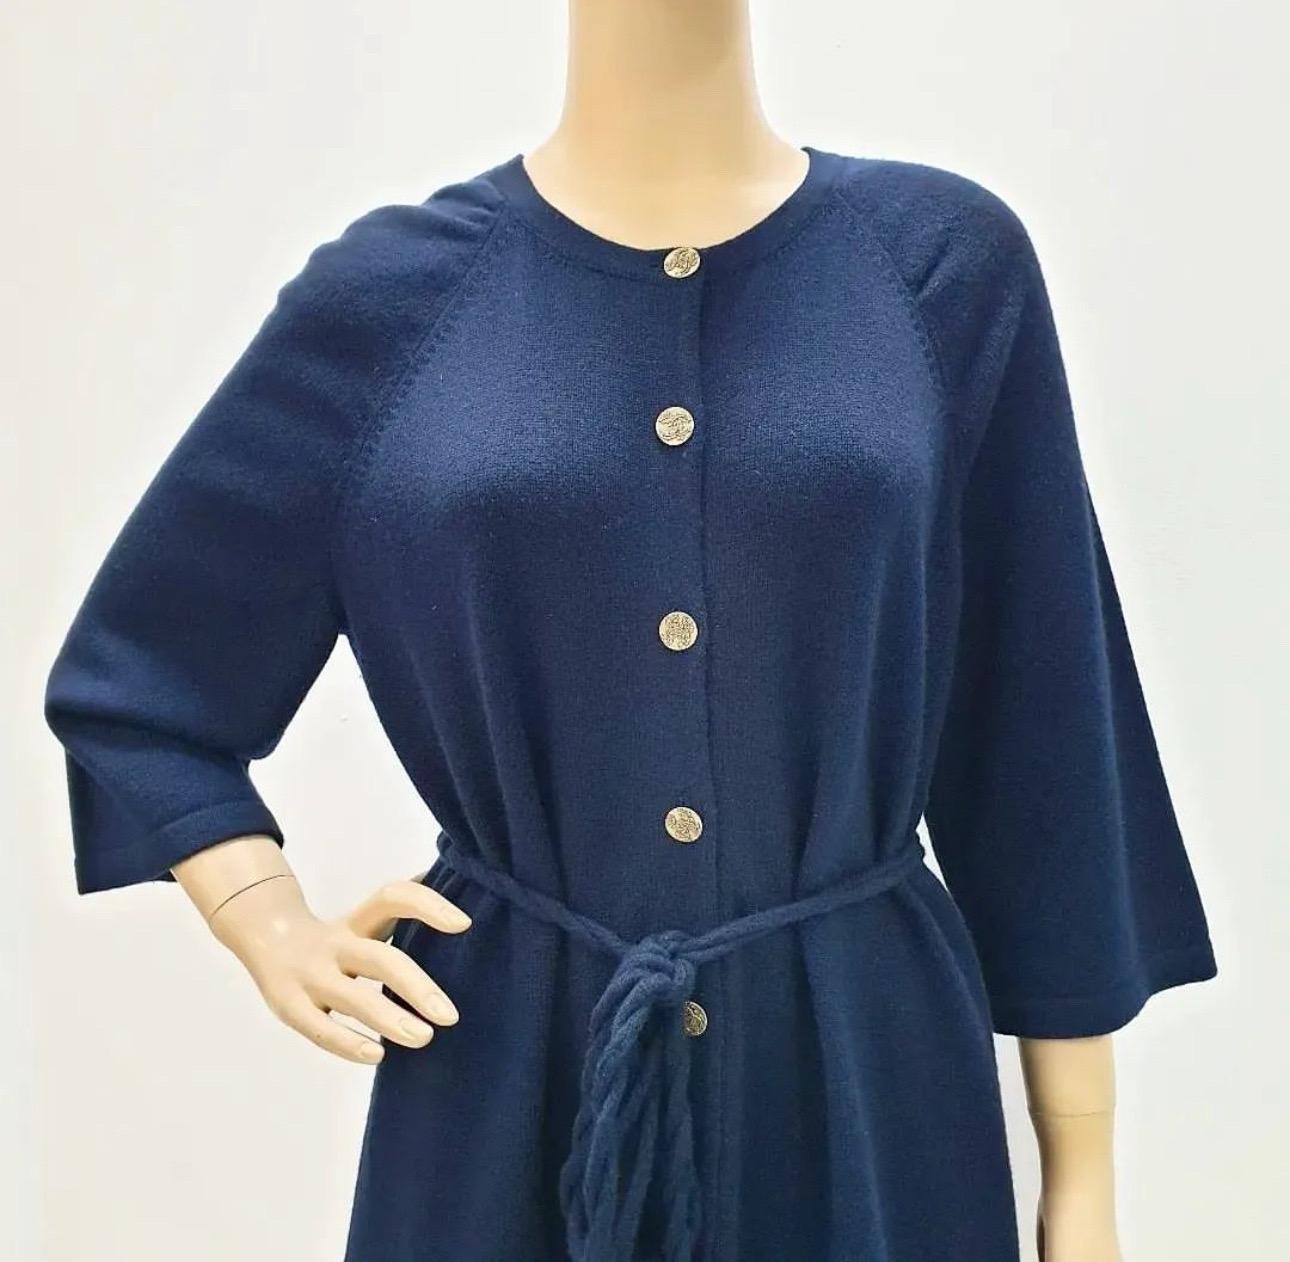 Black CHANEL 18C Navy Blue Belted Cashmere Dress